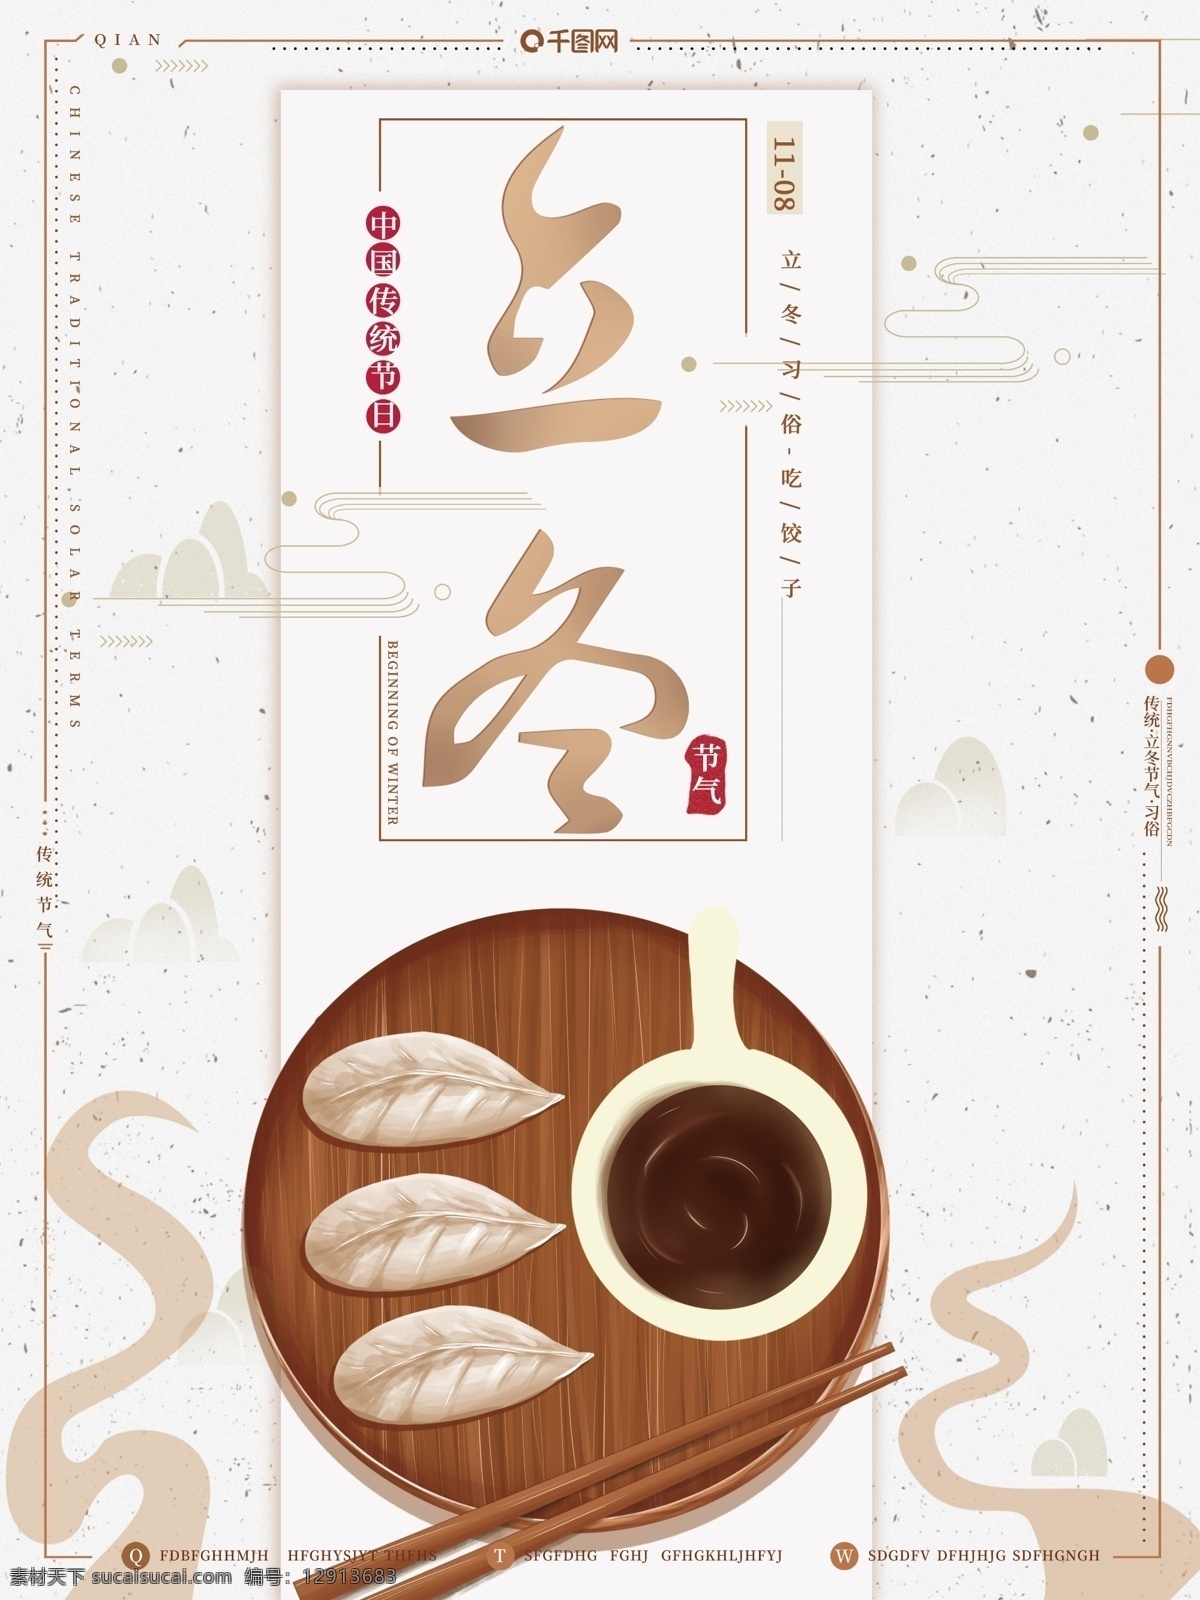 原创 手绘 中国 复古 传统 节气 习俗 立冬 吃 饺子 传统节气 吃饺子 节日海报